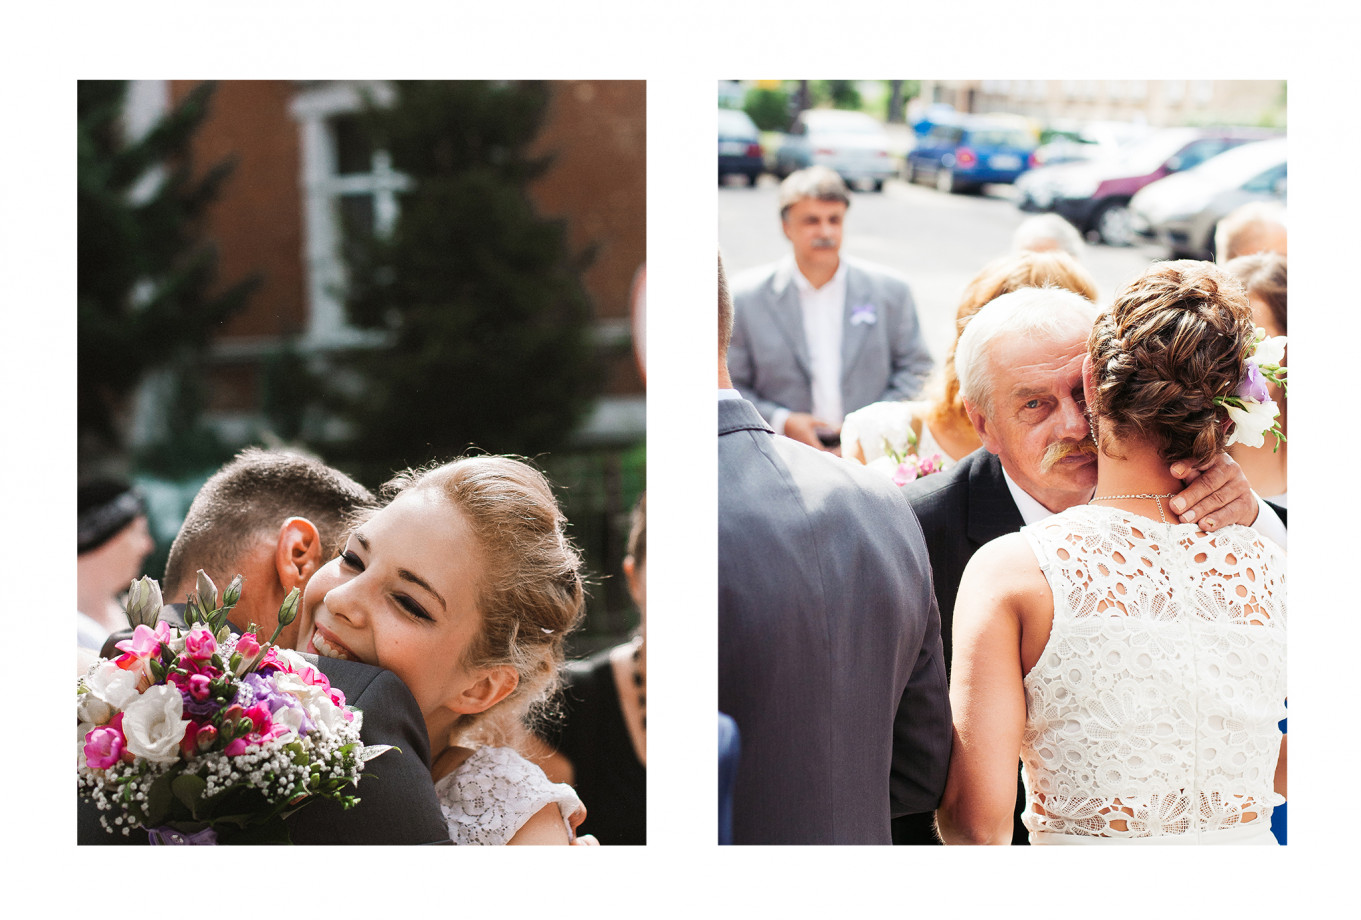 fotograf  kamil-sulikowski portfolio zdjecia slubne inspiracje wesele plener slubny sesja slubna